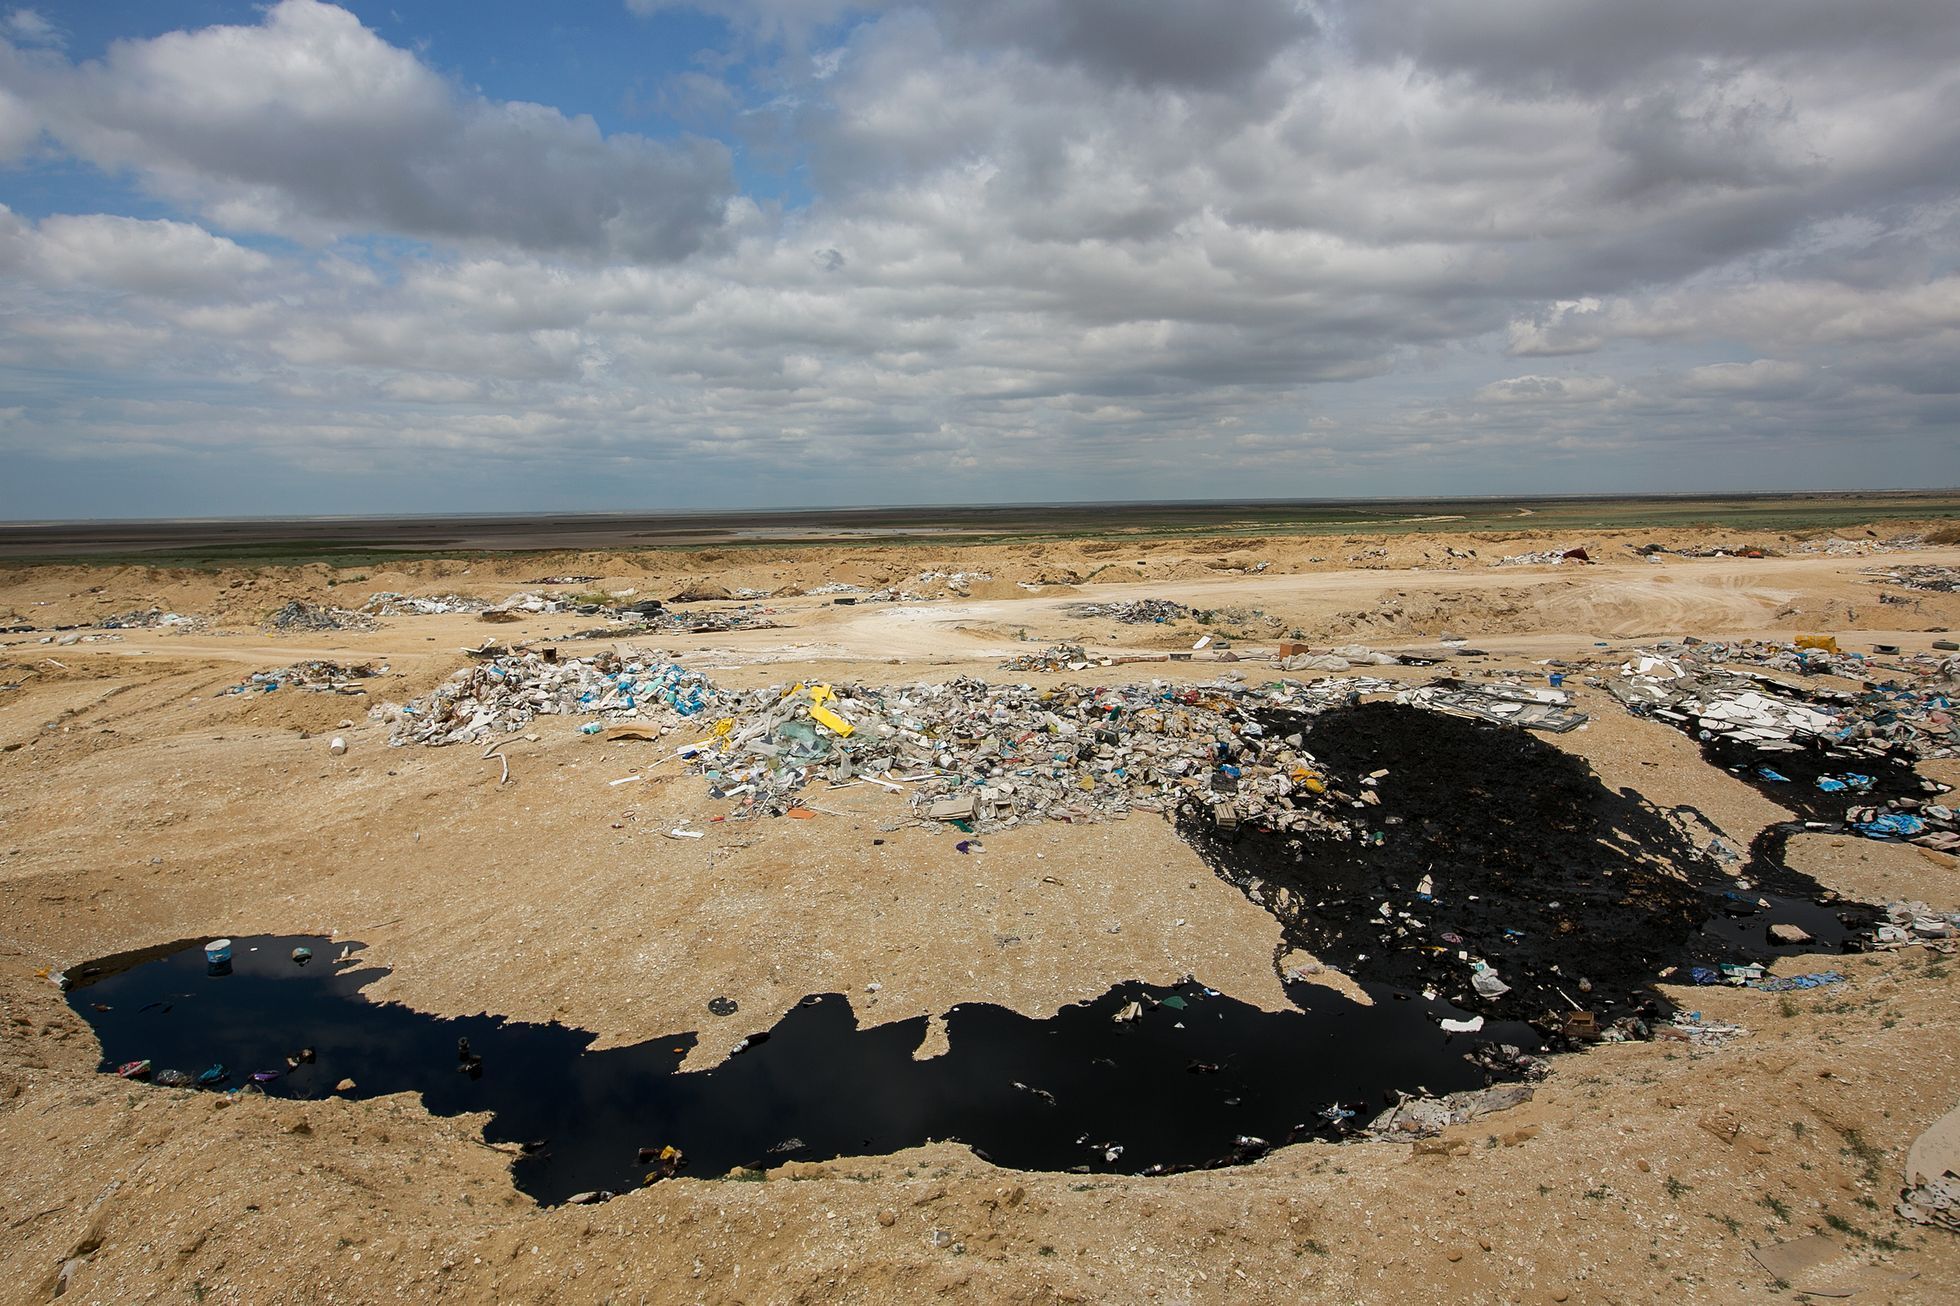 Kazachstán, země přírodních klenotů i ekologické apokalypsy